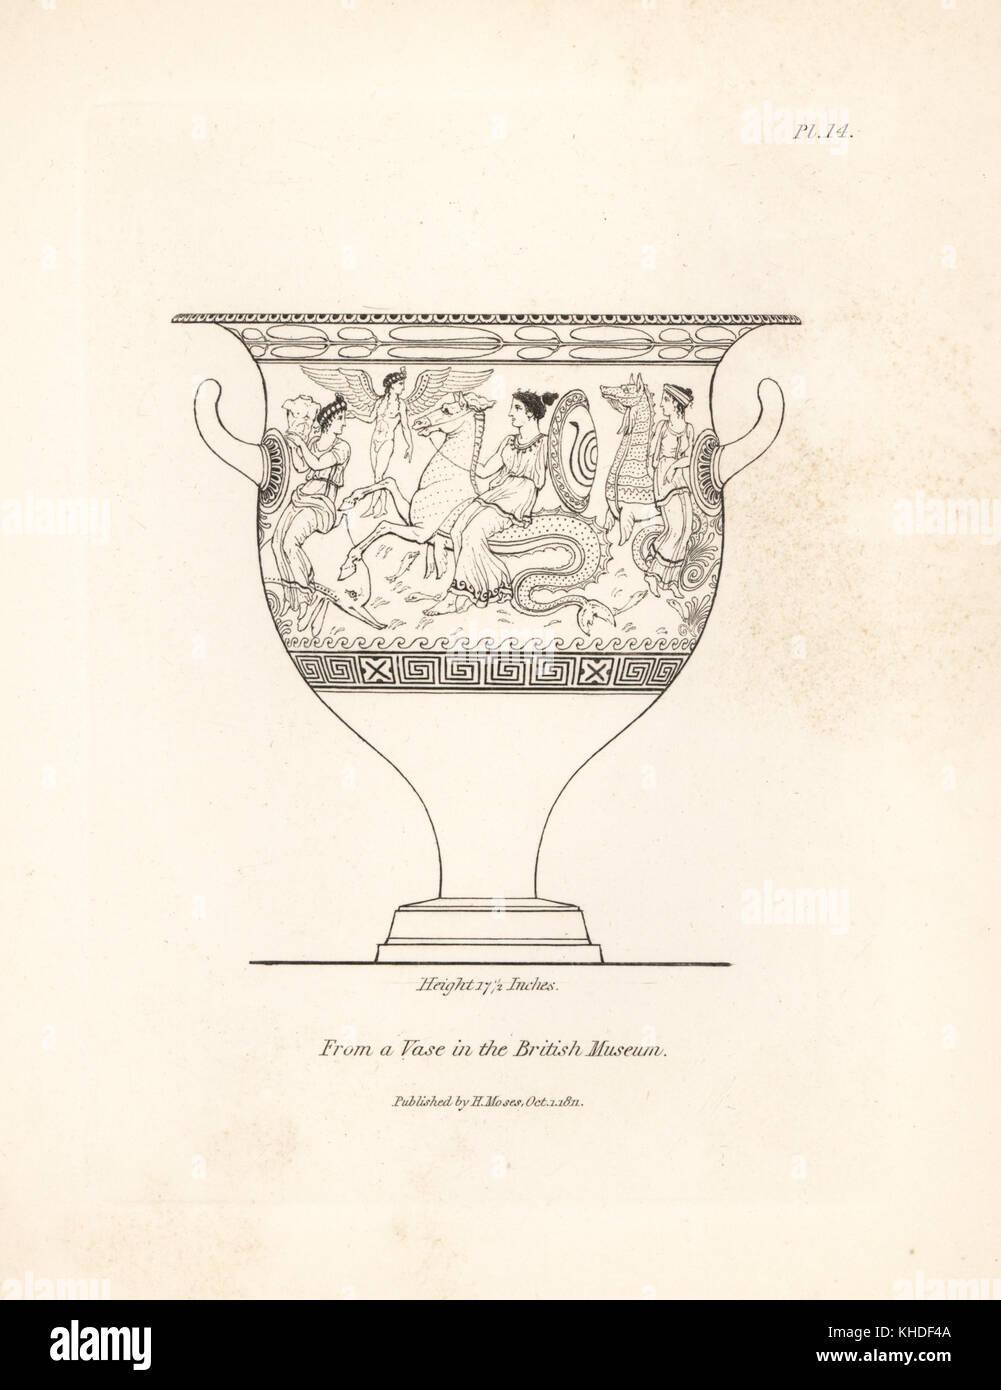 Vase mit mythischen Figuren der Nereiden und hippocampi vom Britischen Museum eingerichtet. Kupferstich von Henry Mose aus einer Sammlung von antiken Vasen, Altäre, etc., London, 1814. Stockfoto